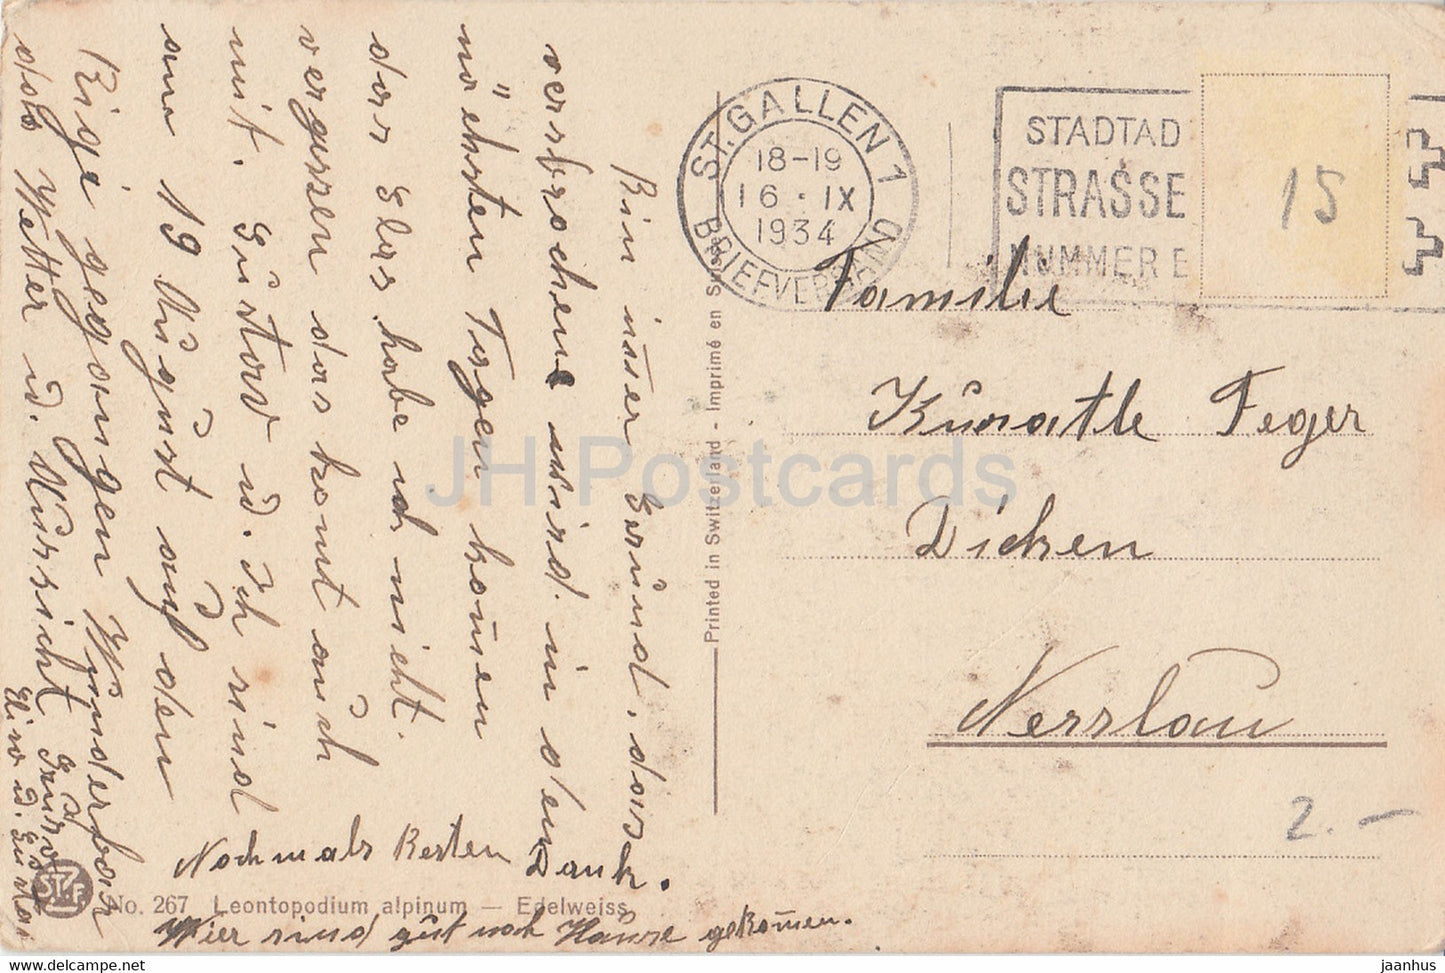 Leontopodium alpinum - Edelweiß - Blumen - 267 - alte Postkarte - 1934 - Schweiz - gebraucht